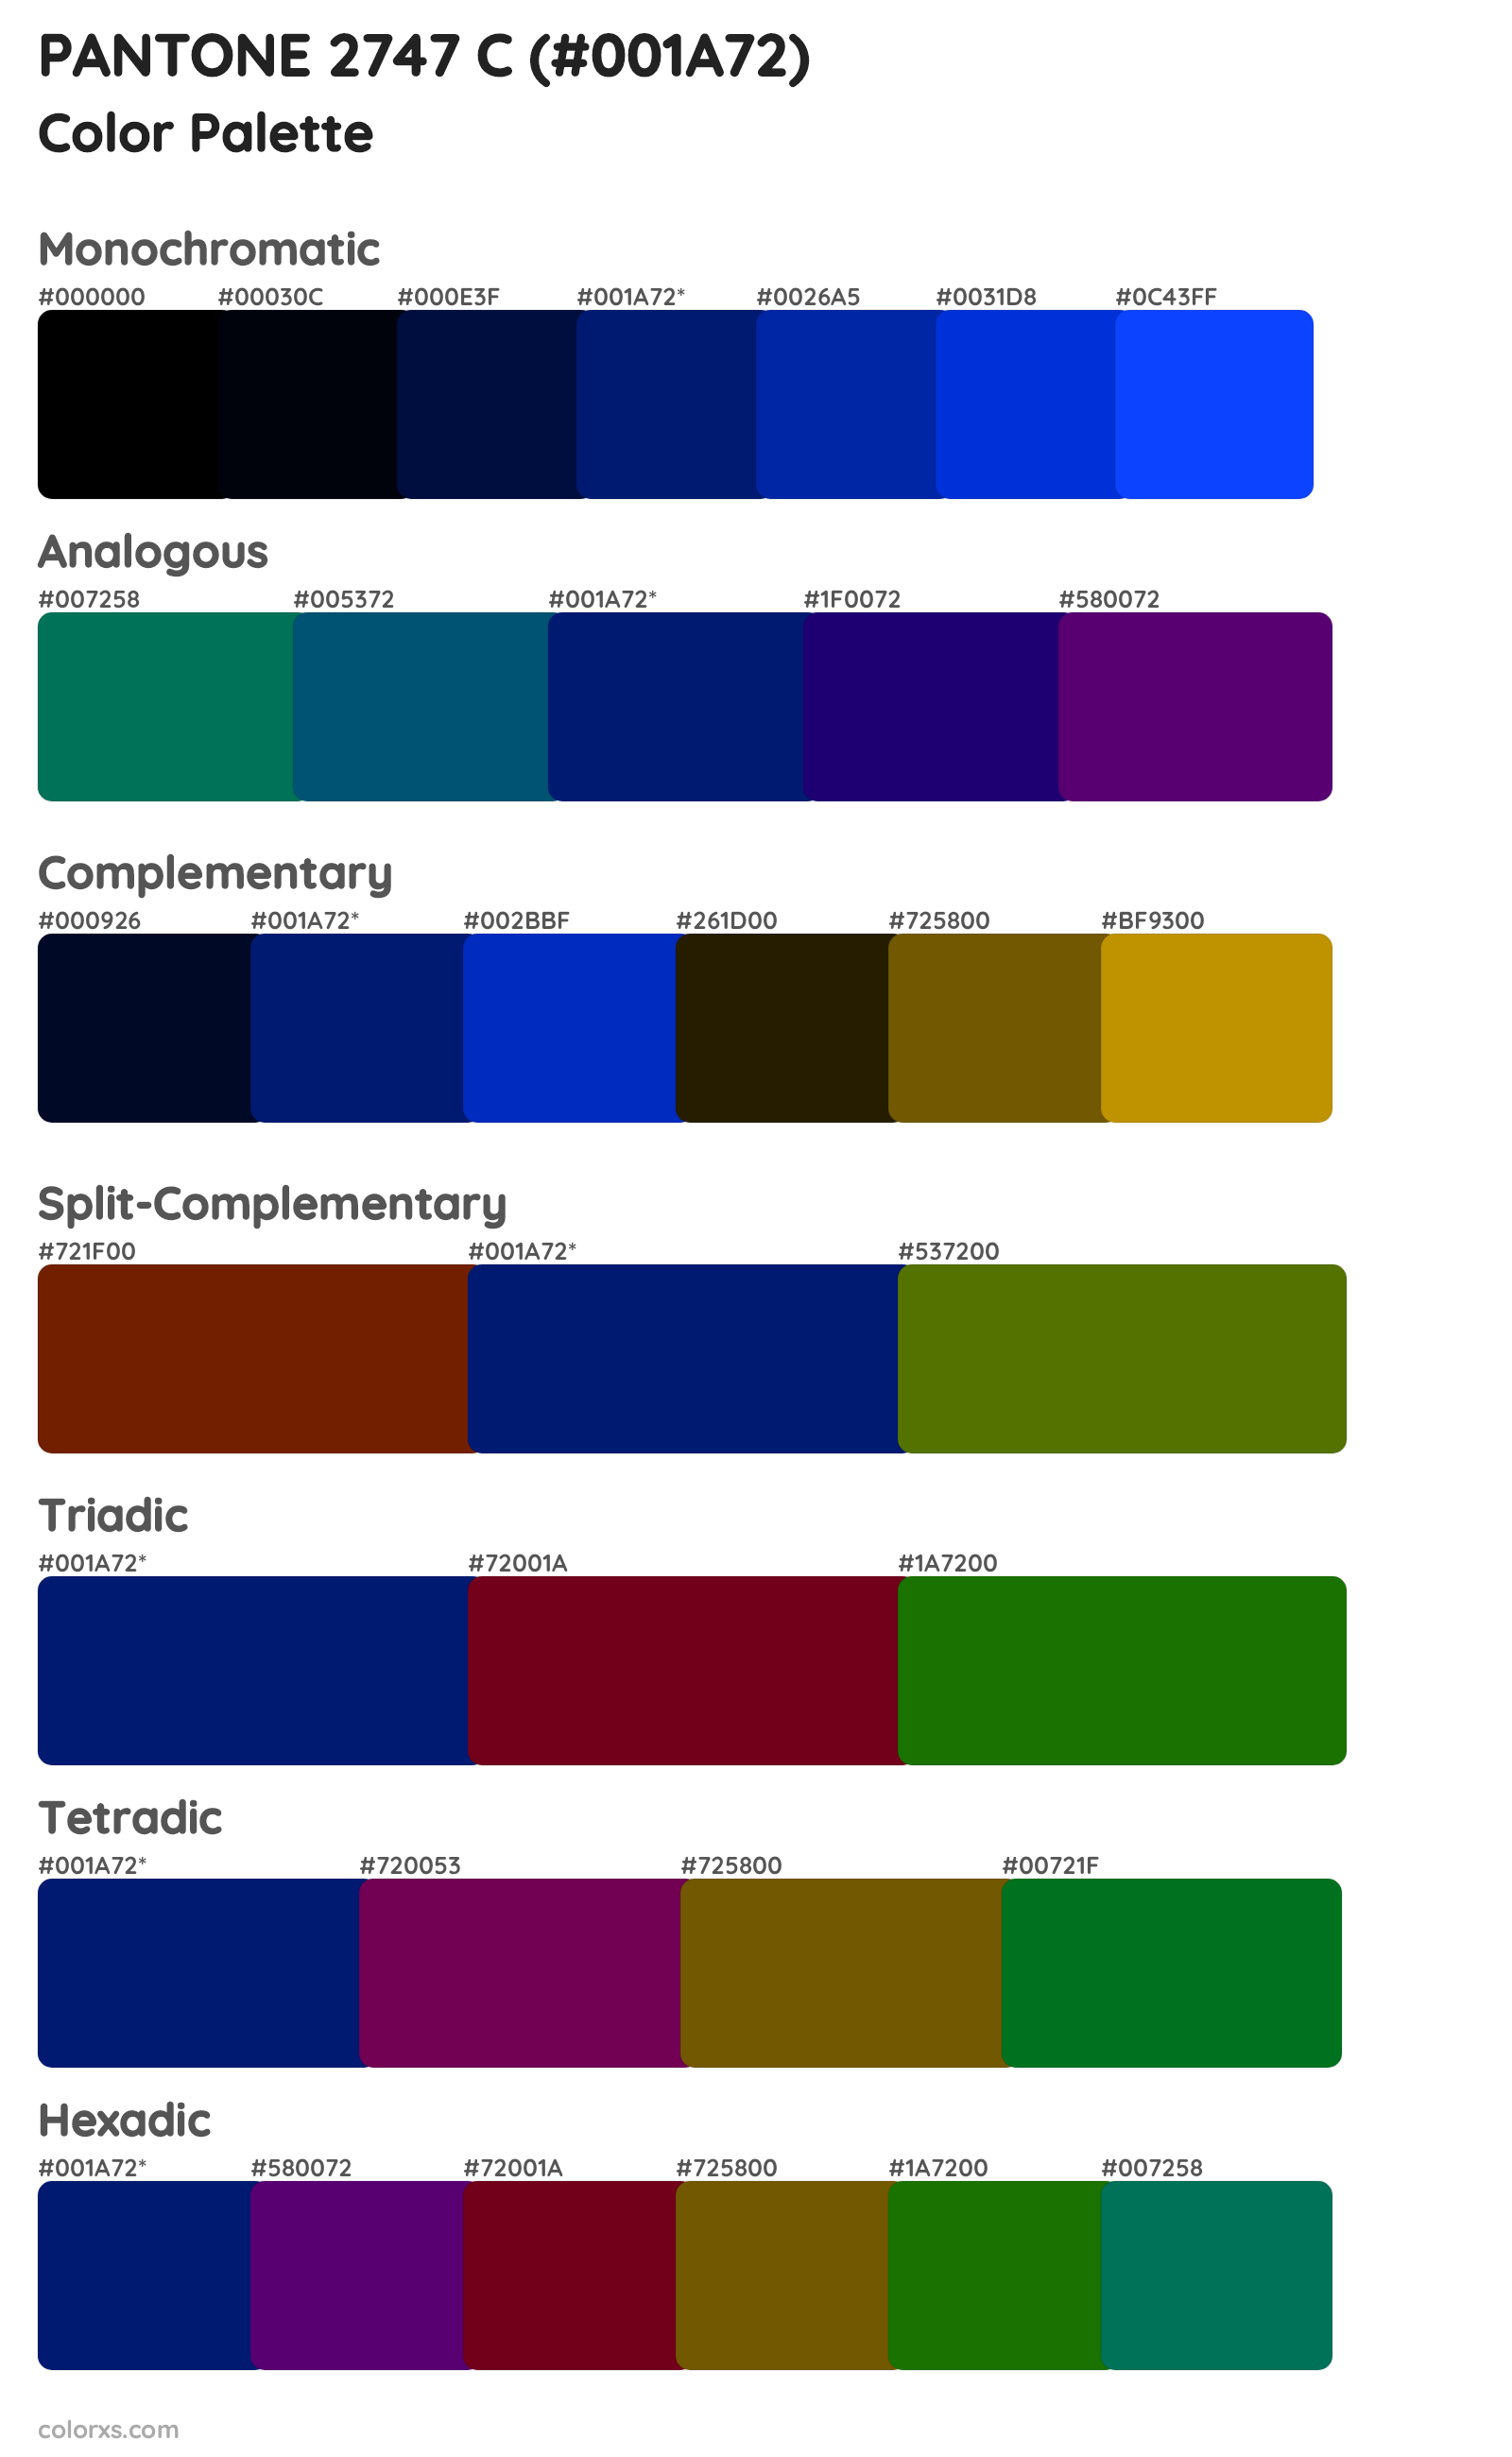 PANTONE 2747 C Color Scheme Palettes